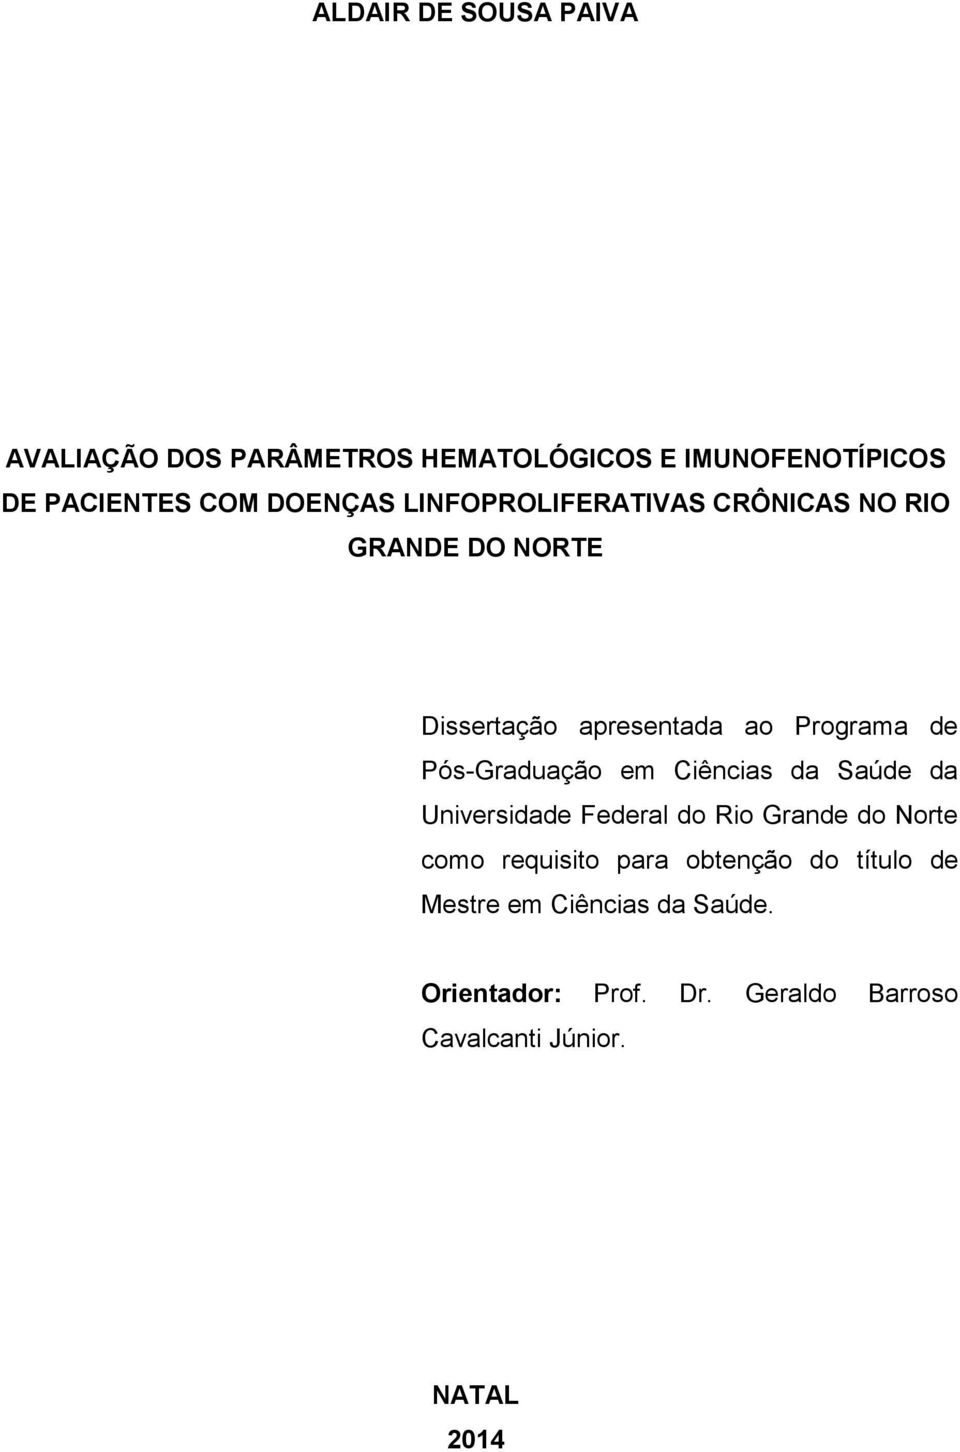 Pós-Graduação em Ciências da Saúde da Universidade Federal do Rio Grande do Norte como requisito para